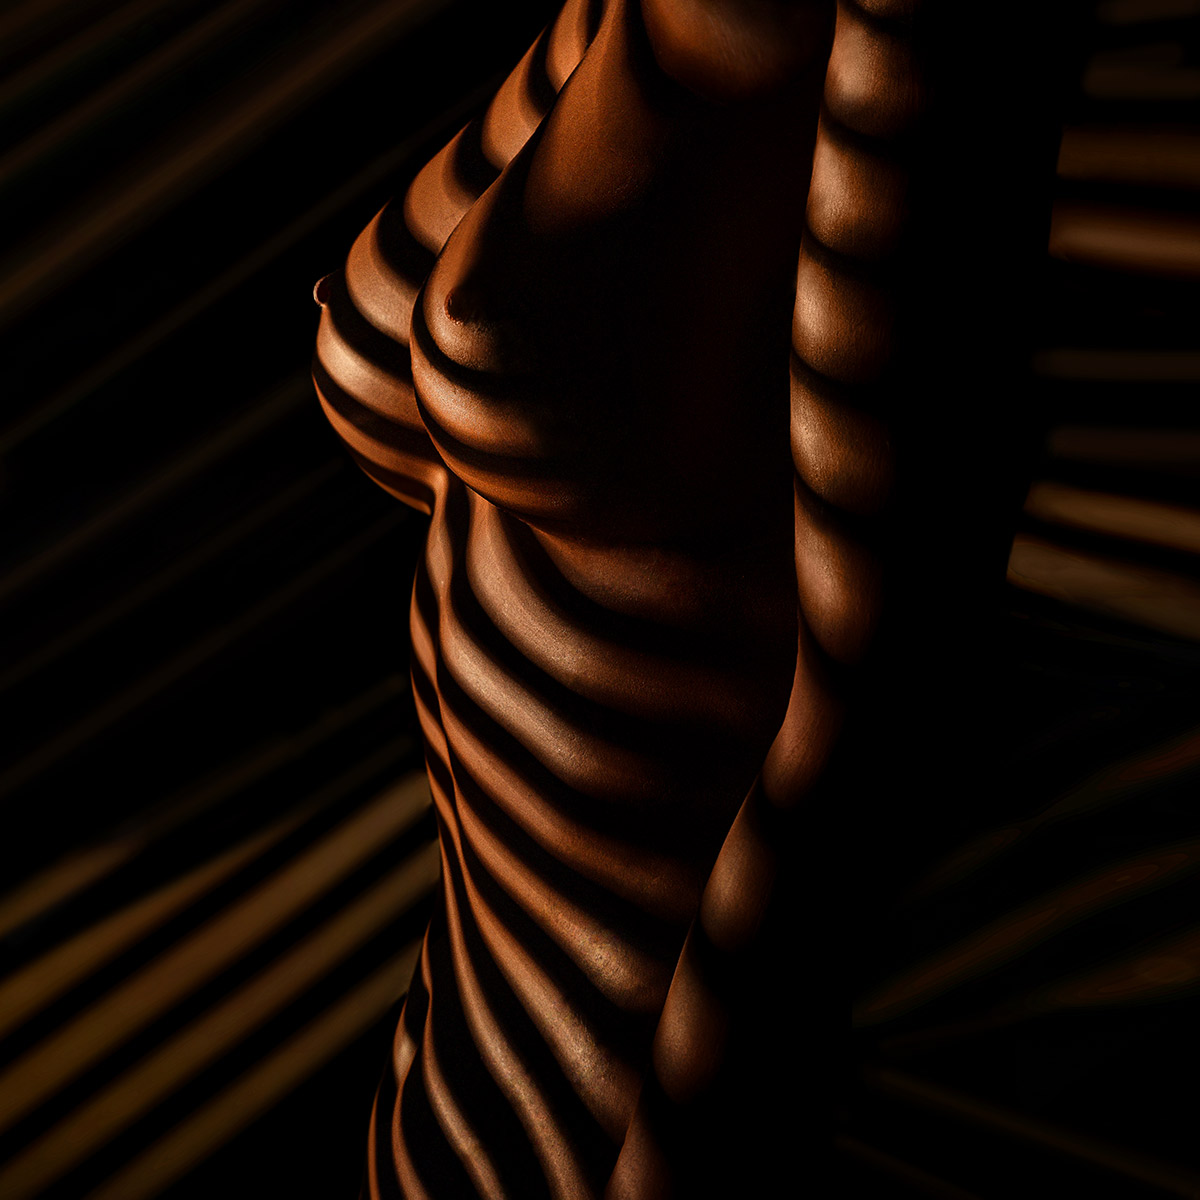 Erotikfotos mit Lichtstrahlen auf Frauen-Körper + ästhetische  Aktfotografien mit Licht und Schatten Aktfoto Ideen für ein Aktshooting  im Fotostudio